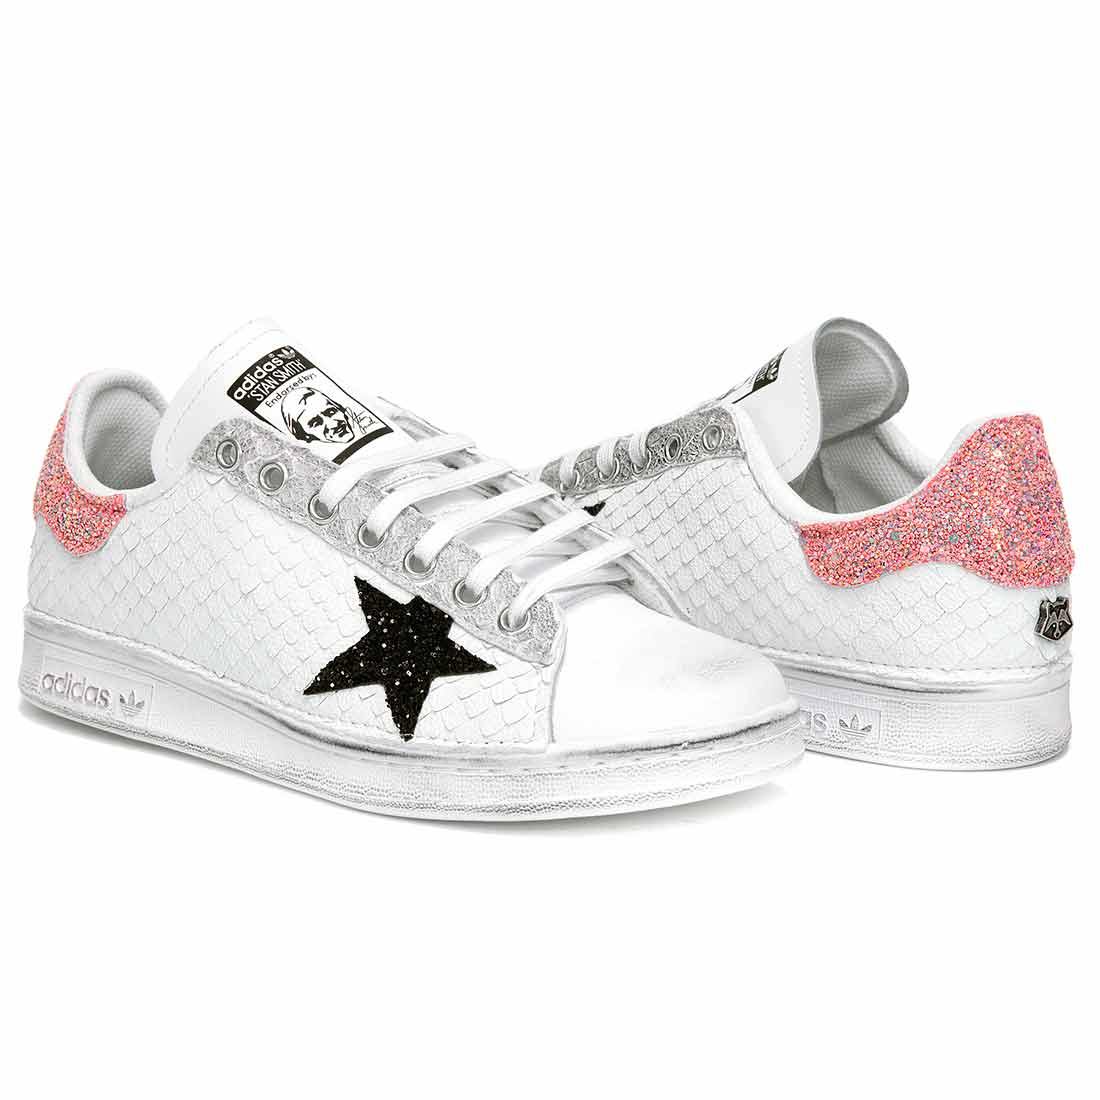 sneakers con stelle pitonate bianche